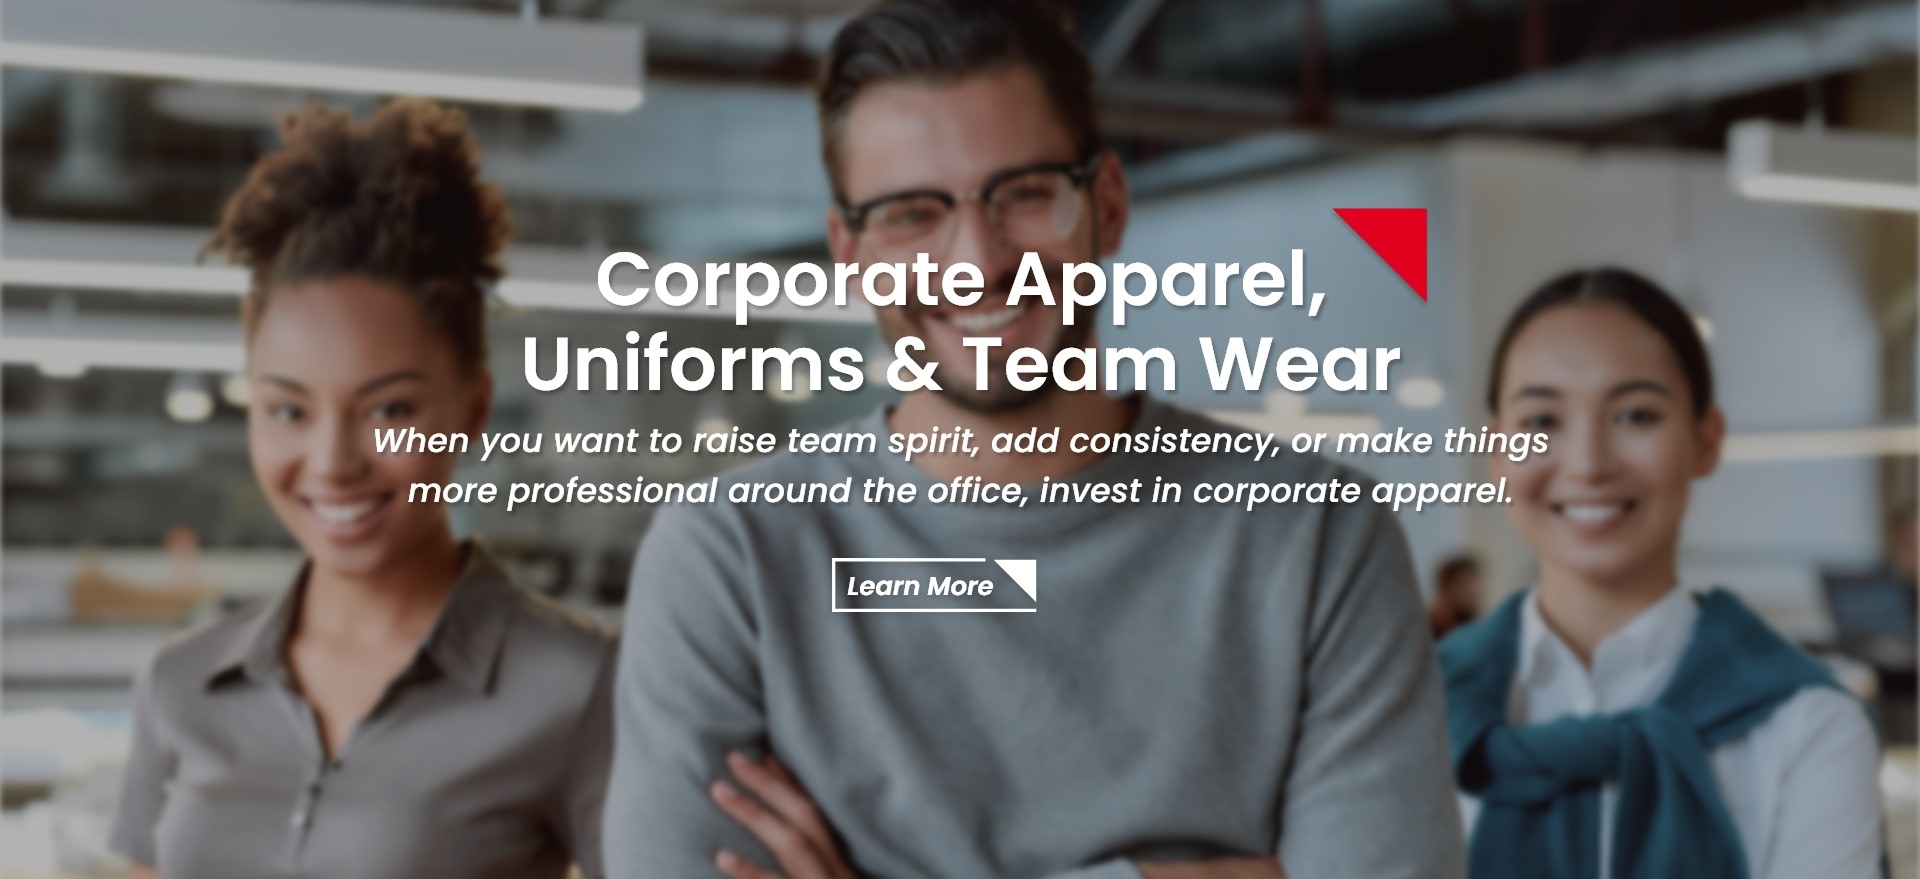 Corporate Apparel,
                  Uniforms & Team Wear